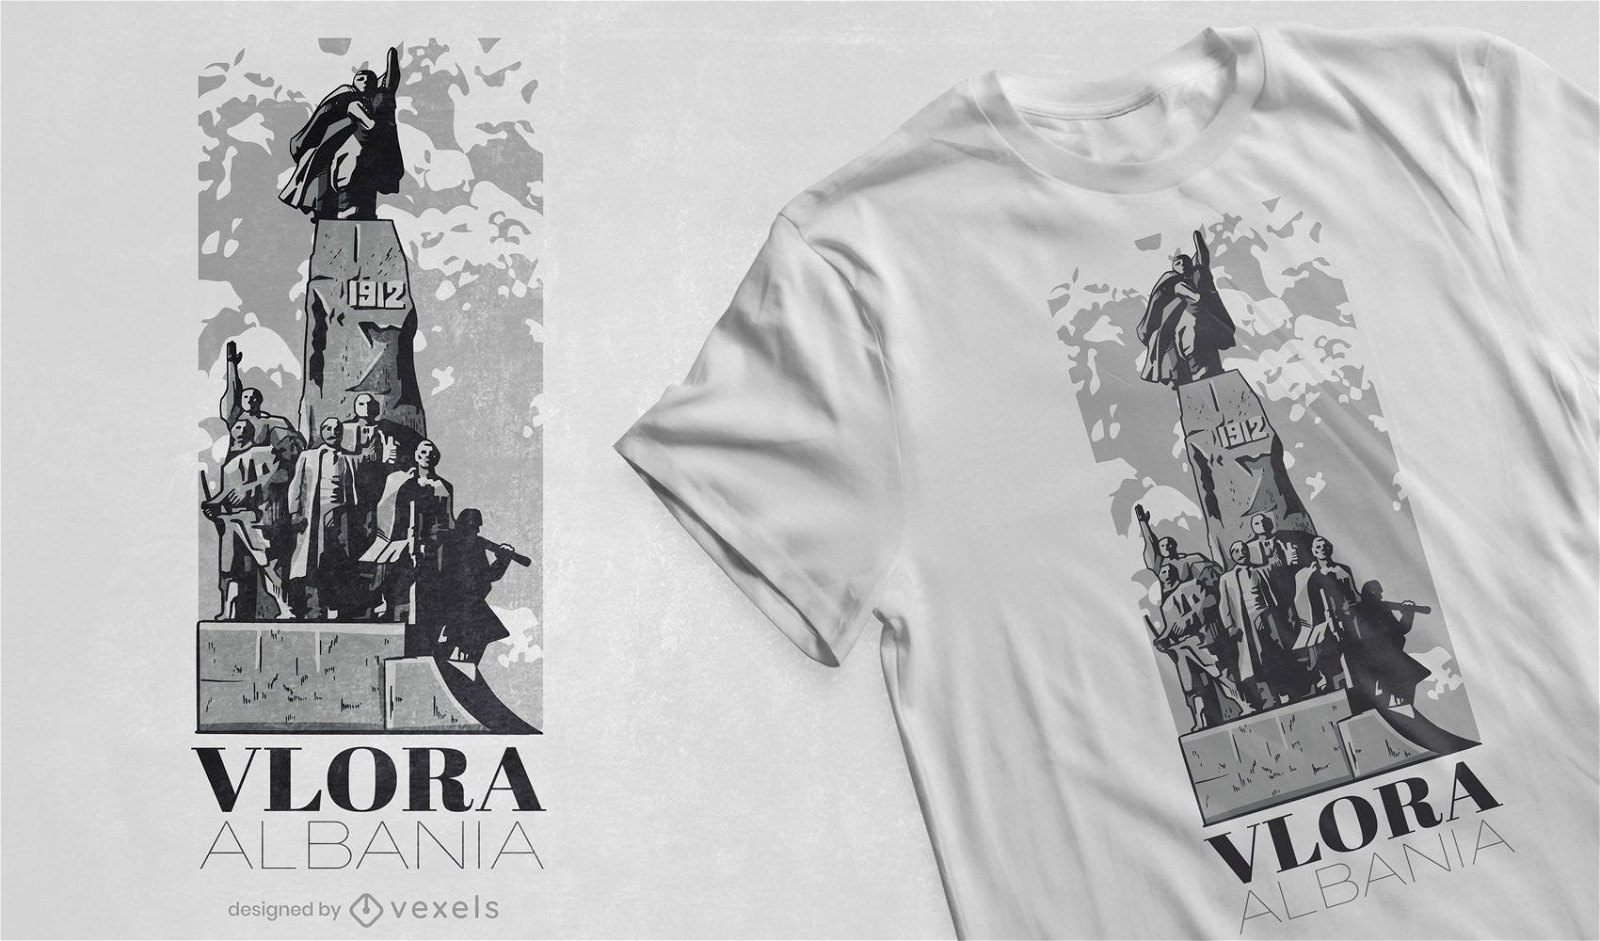 Diseño de camiseta de la estatua de Monument Albania